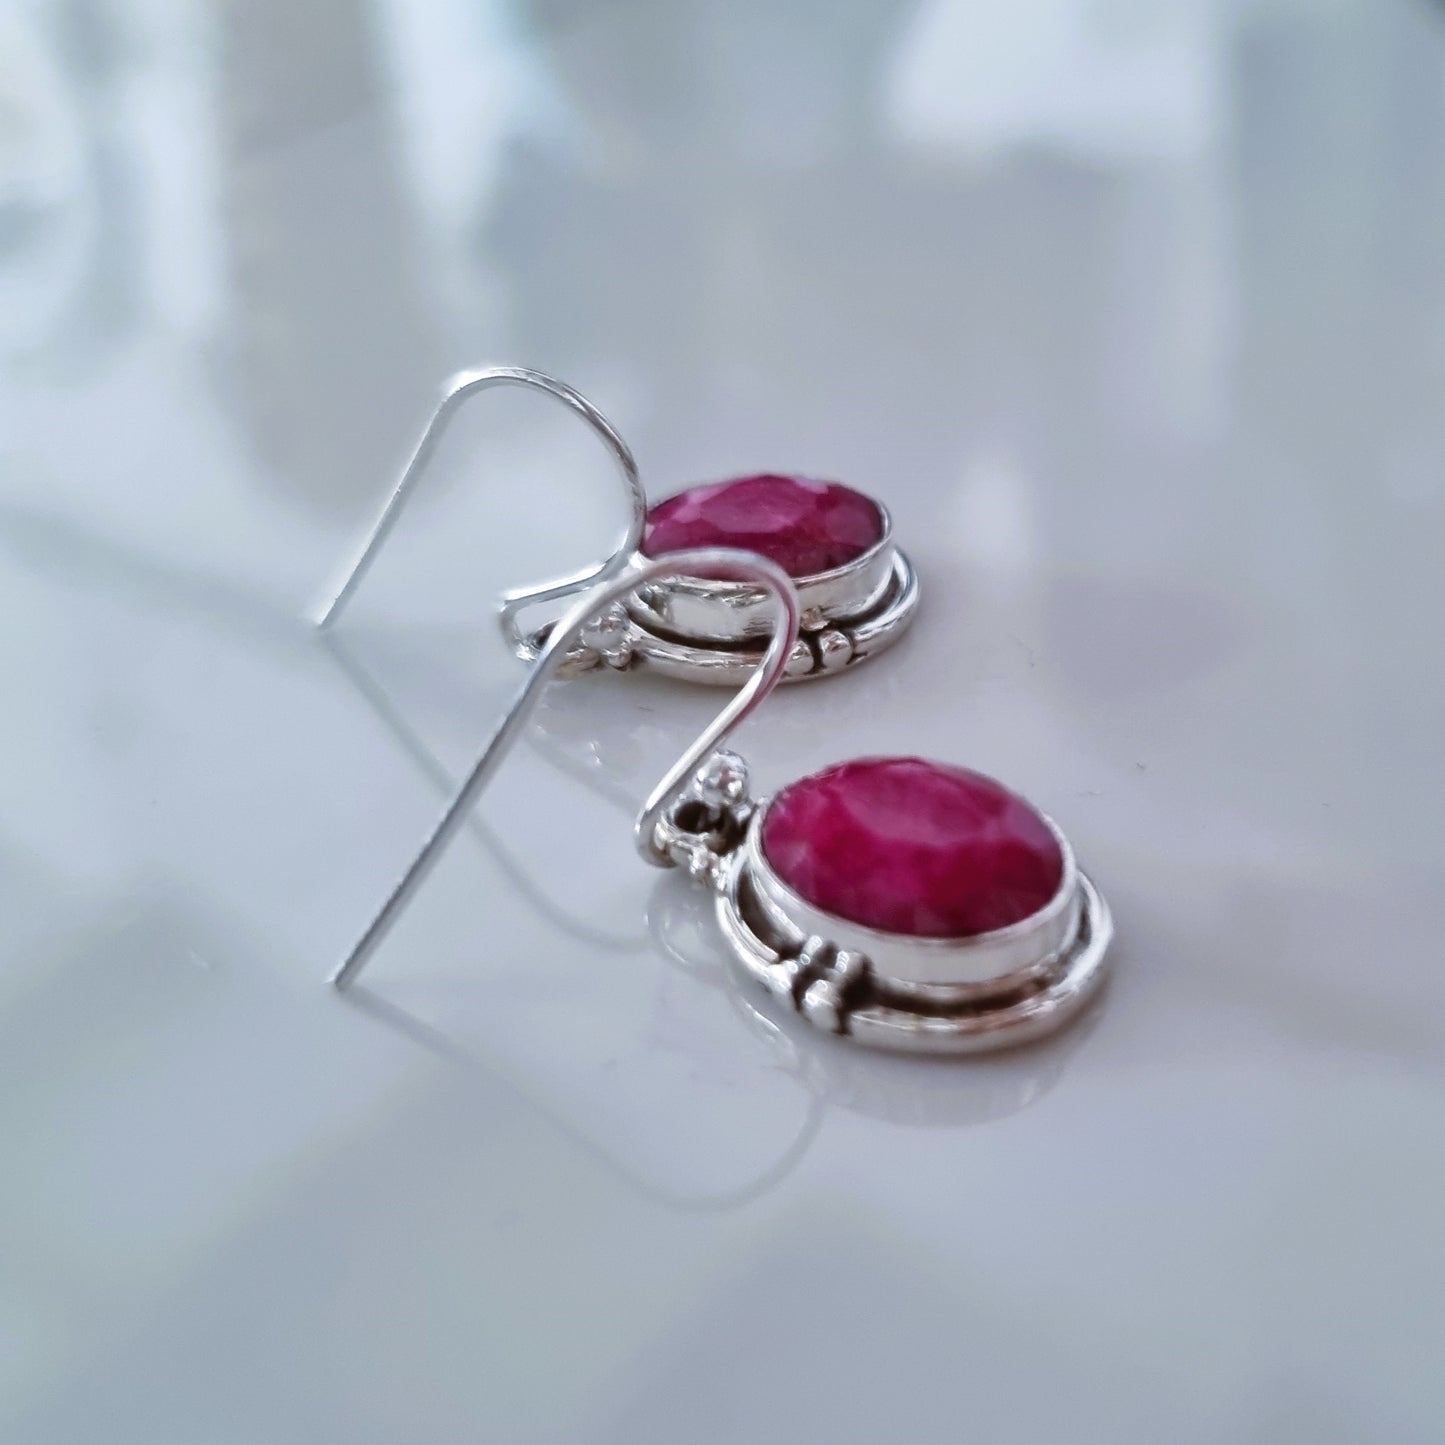 Oval ruby silver earrings